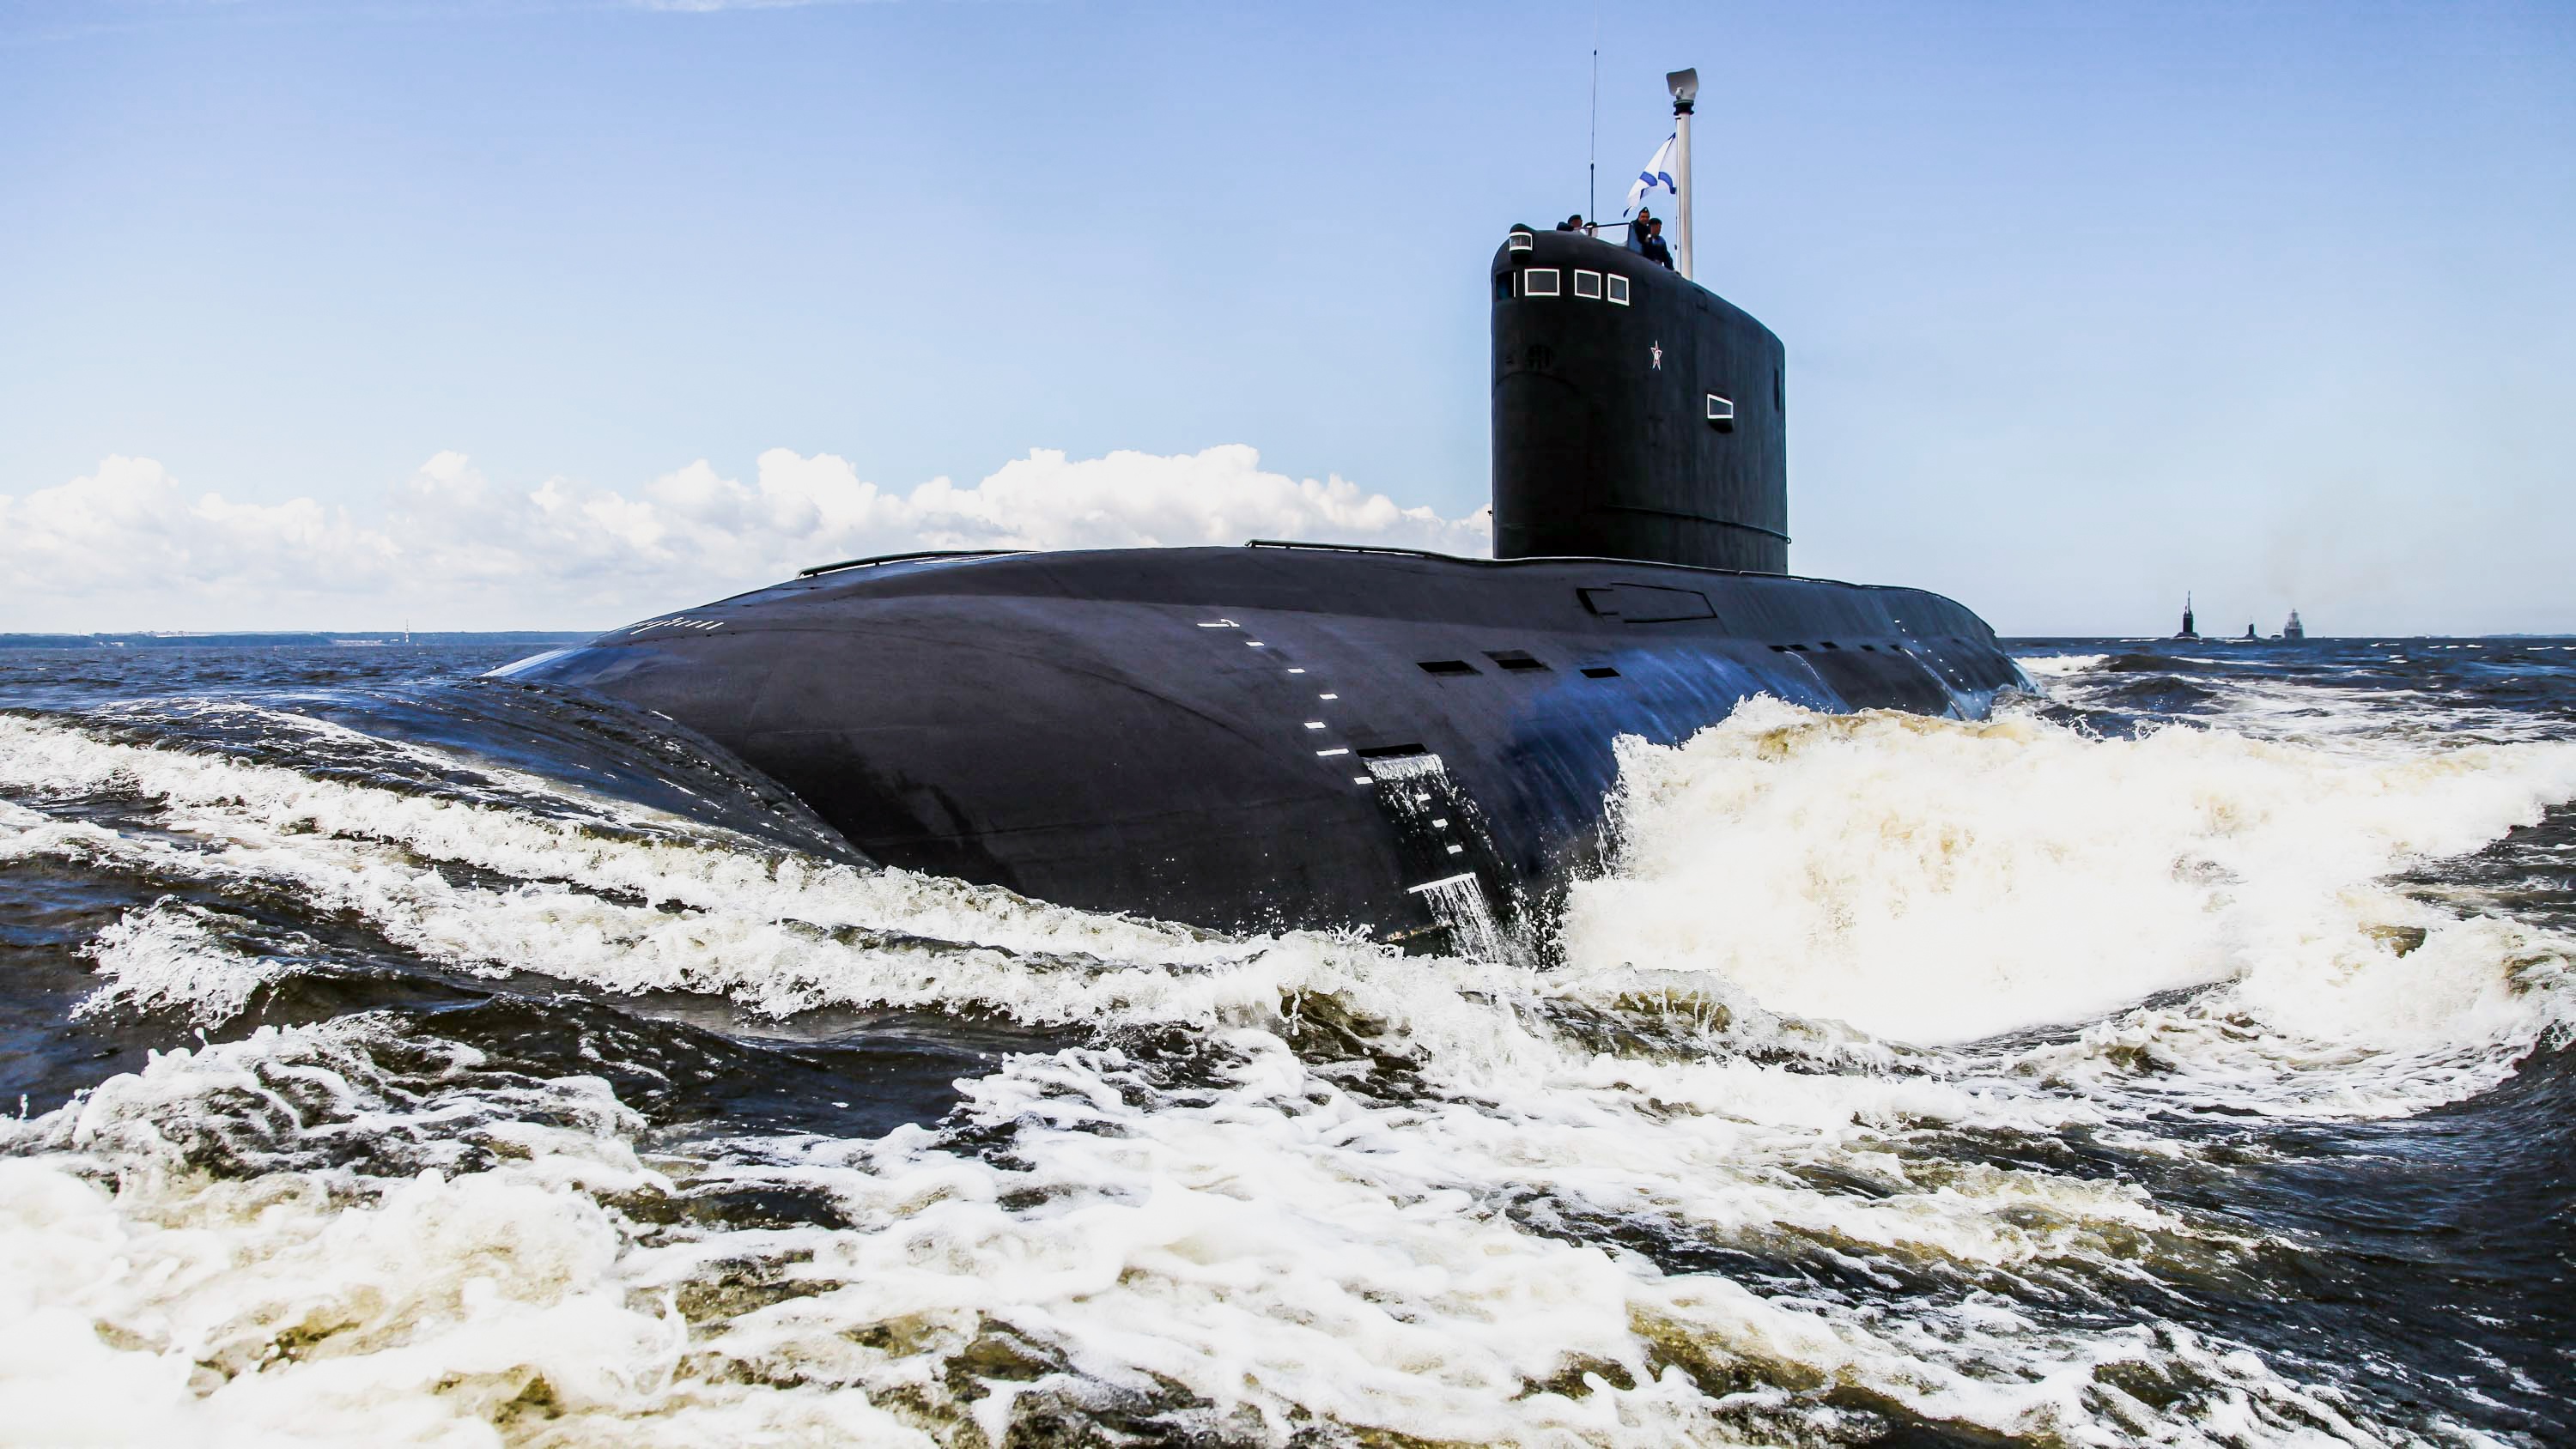 Лодки пл. Подводные лодки проекта 636 «Варшавянка». Подводная лодка проекта 877 палтус. Дизель-электрическая подводная лодка проекта 636.3 «Волхов». Варшавянка подводная лодка 636.3.